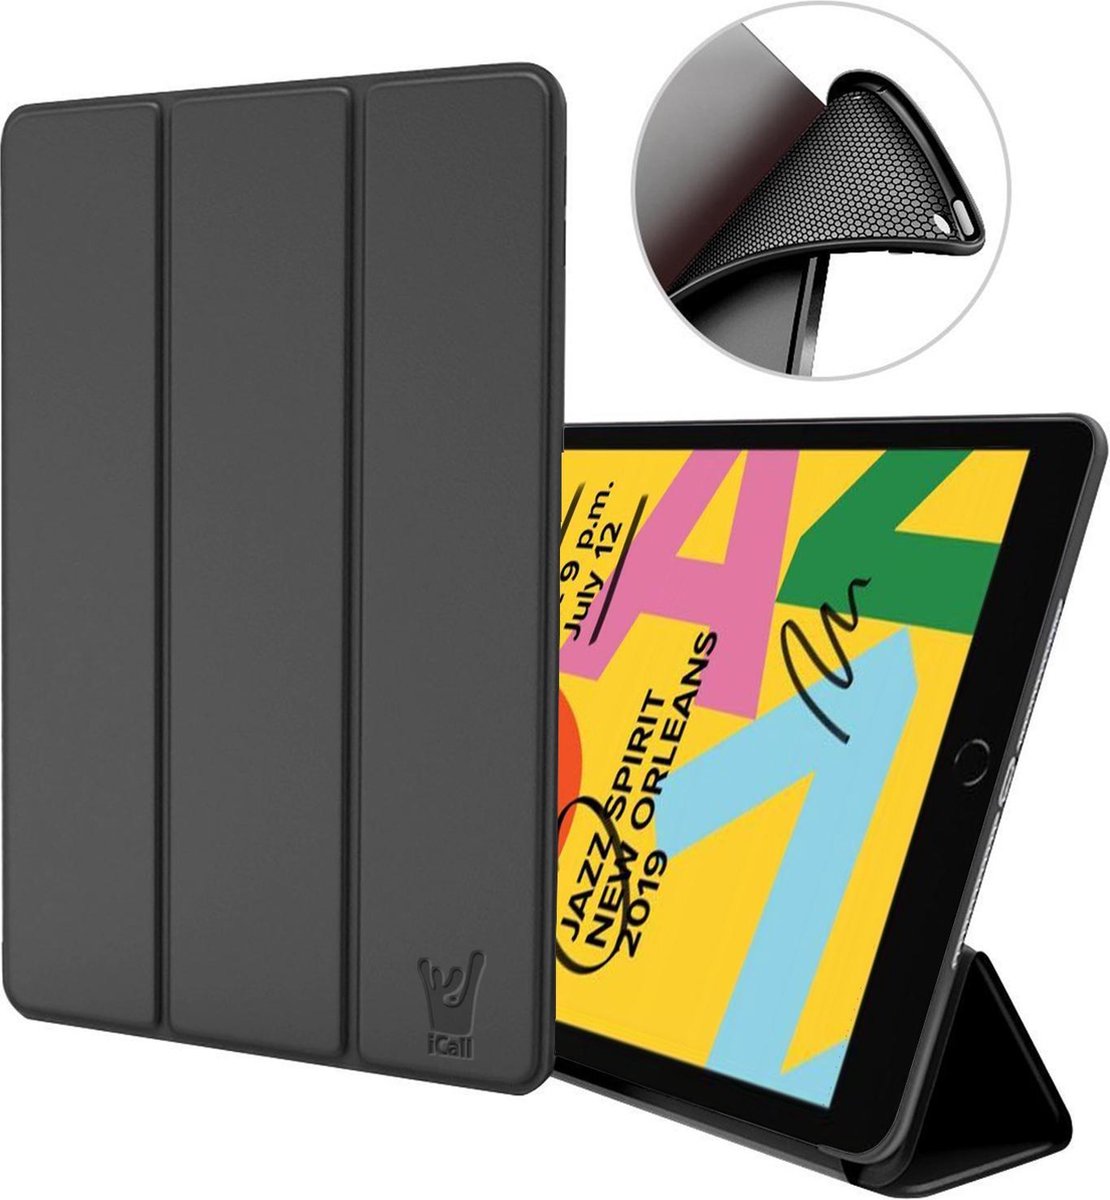 Hoes geschikt voor iPad 2019 / 2020 / 2021 10.2 inch - Trifold Book Case Leer Tablet Hoesje Zwart - iCall